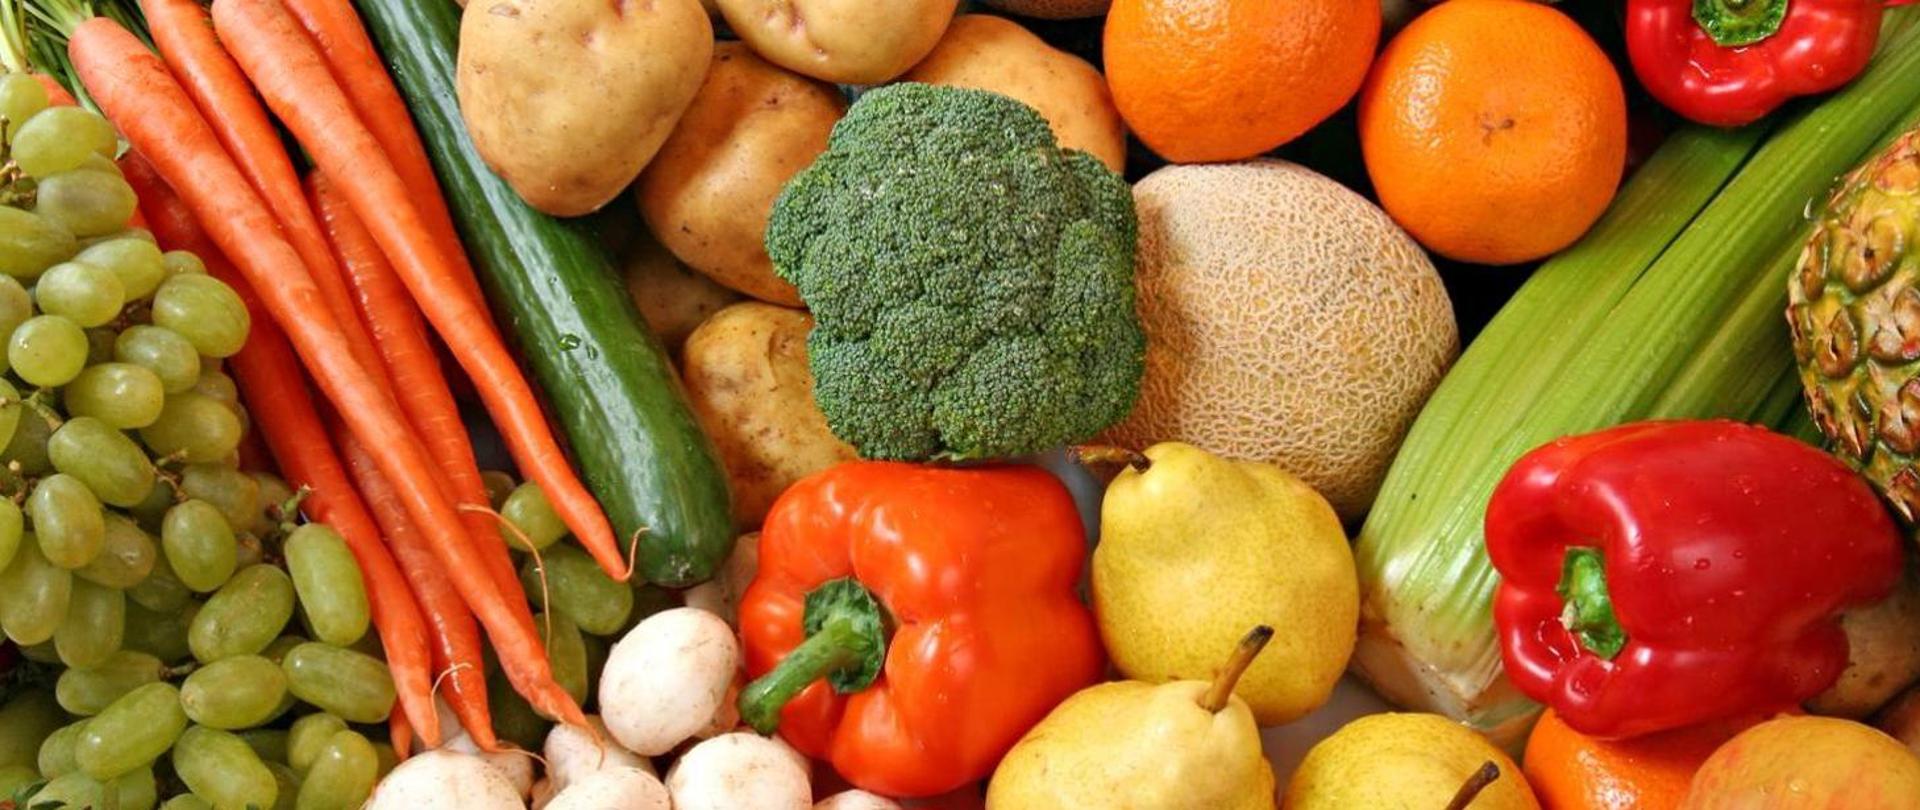 obraz przedstawia różnego rodzaju owoce i warzywa